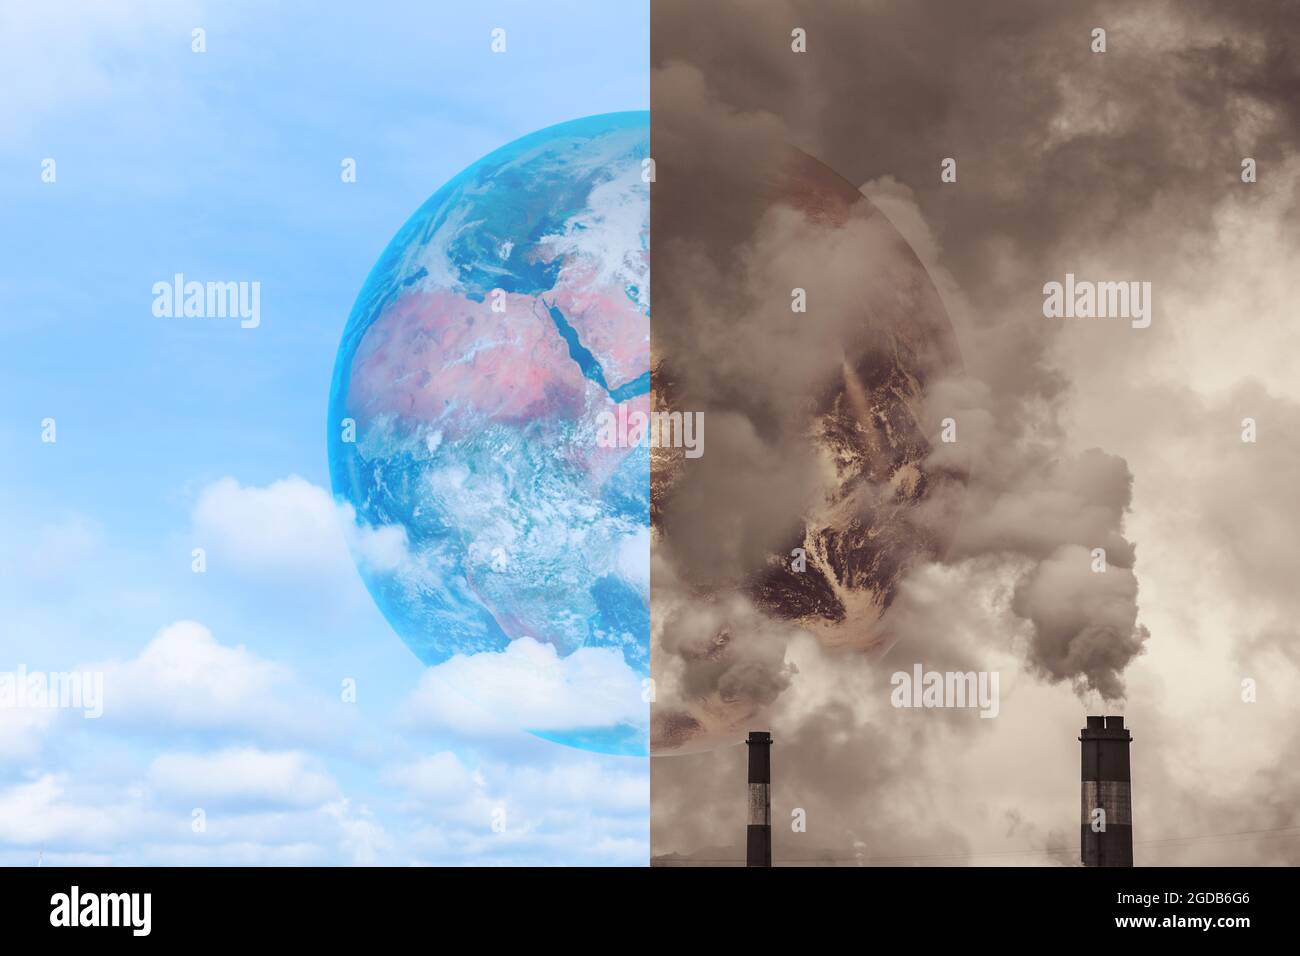 Verschmutzung Erde vergleiche mit sauberer Erde für Treibhauseffekt und Krisenbewusstsein der globalen Erwärmung.Elemente dieses Bildes wurden von der NASA zur Verfügung gestellt. Stockfoto